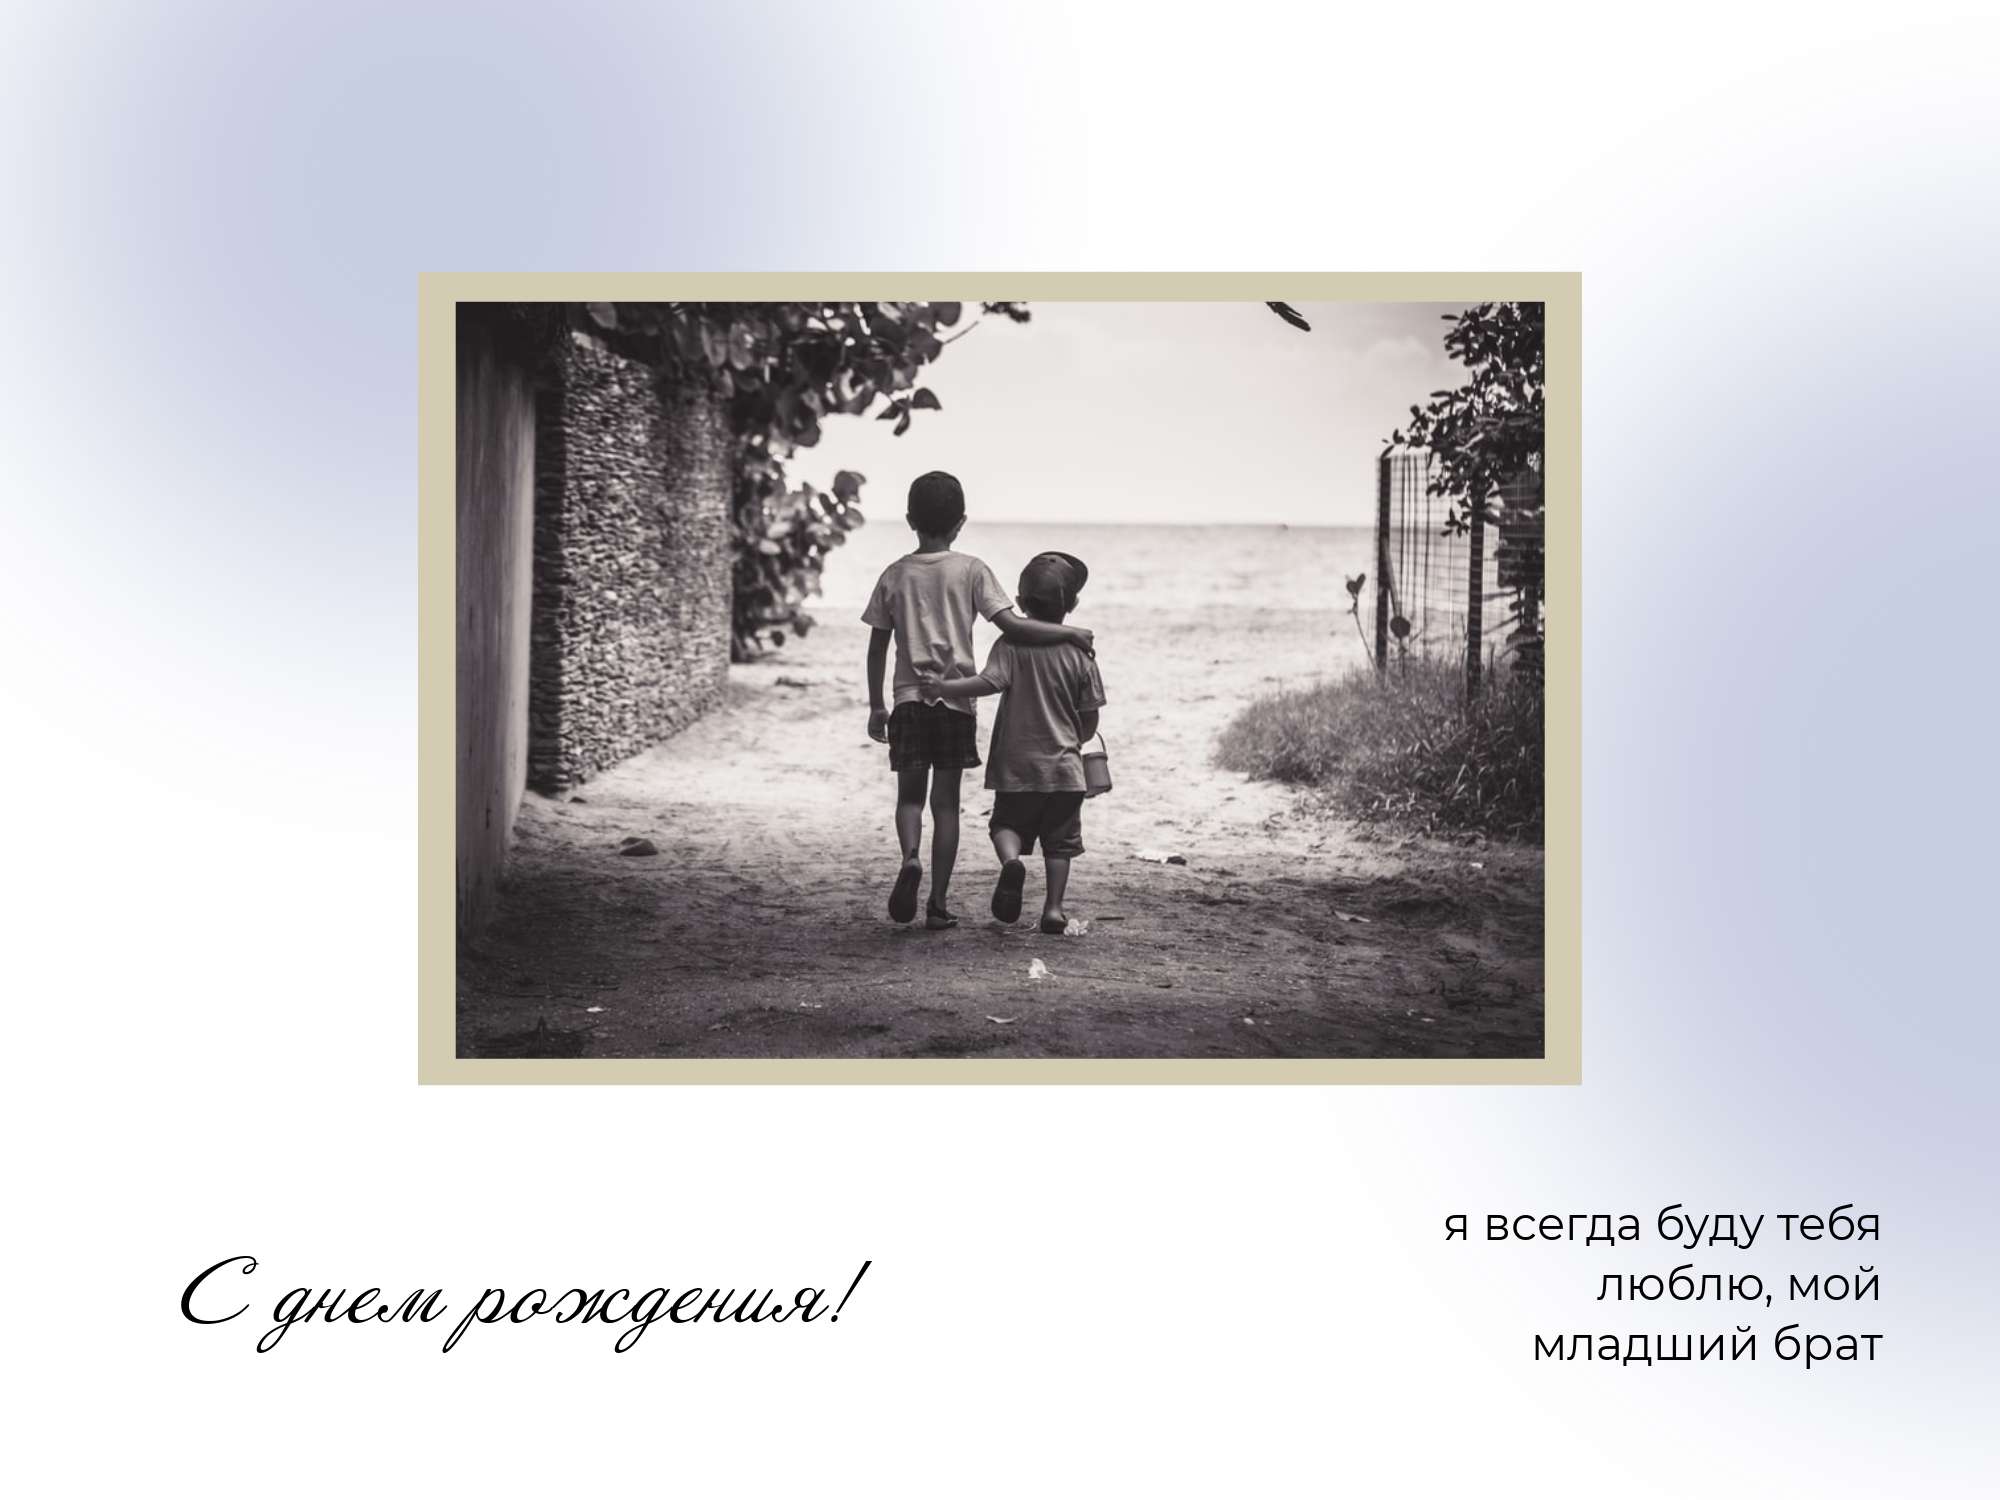 Ностальгическая открытка с черно-белым фото детей на аллее для поздравления брата с днем рождения